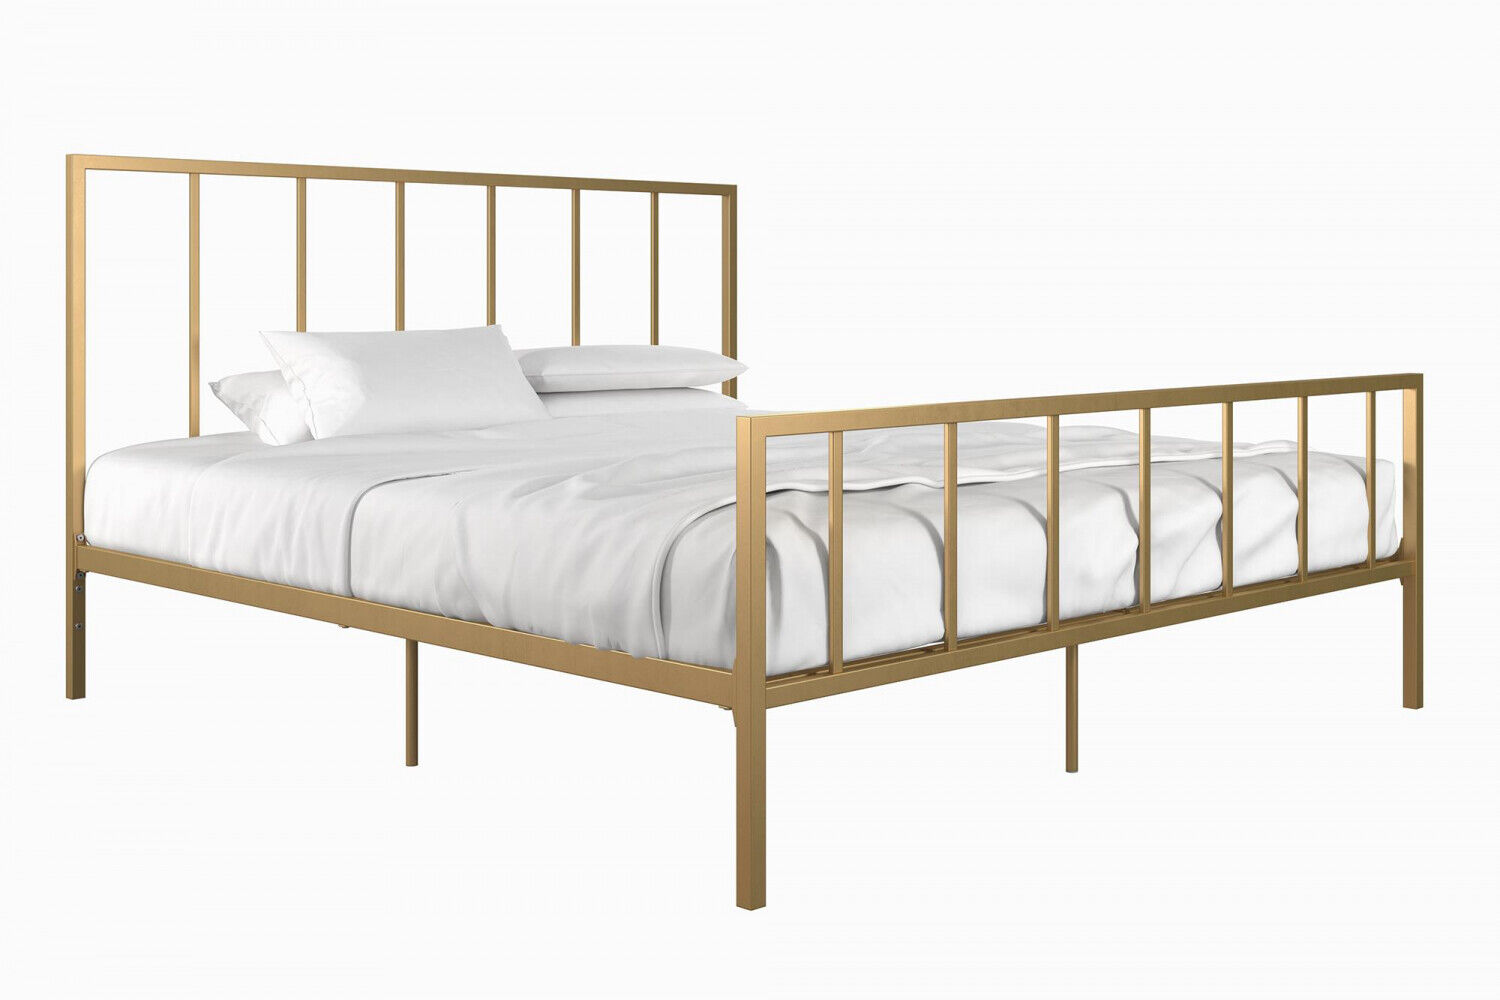 Metal Platform Bed Frame, King Size Metal Platform Bed